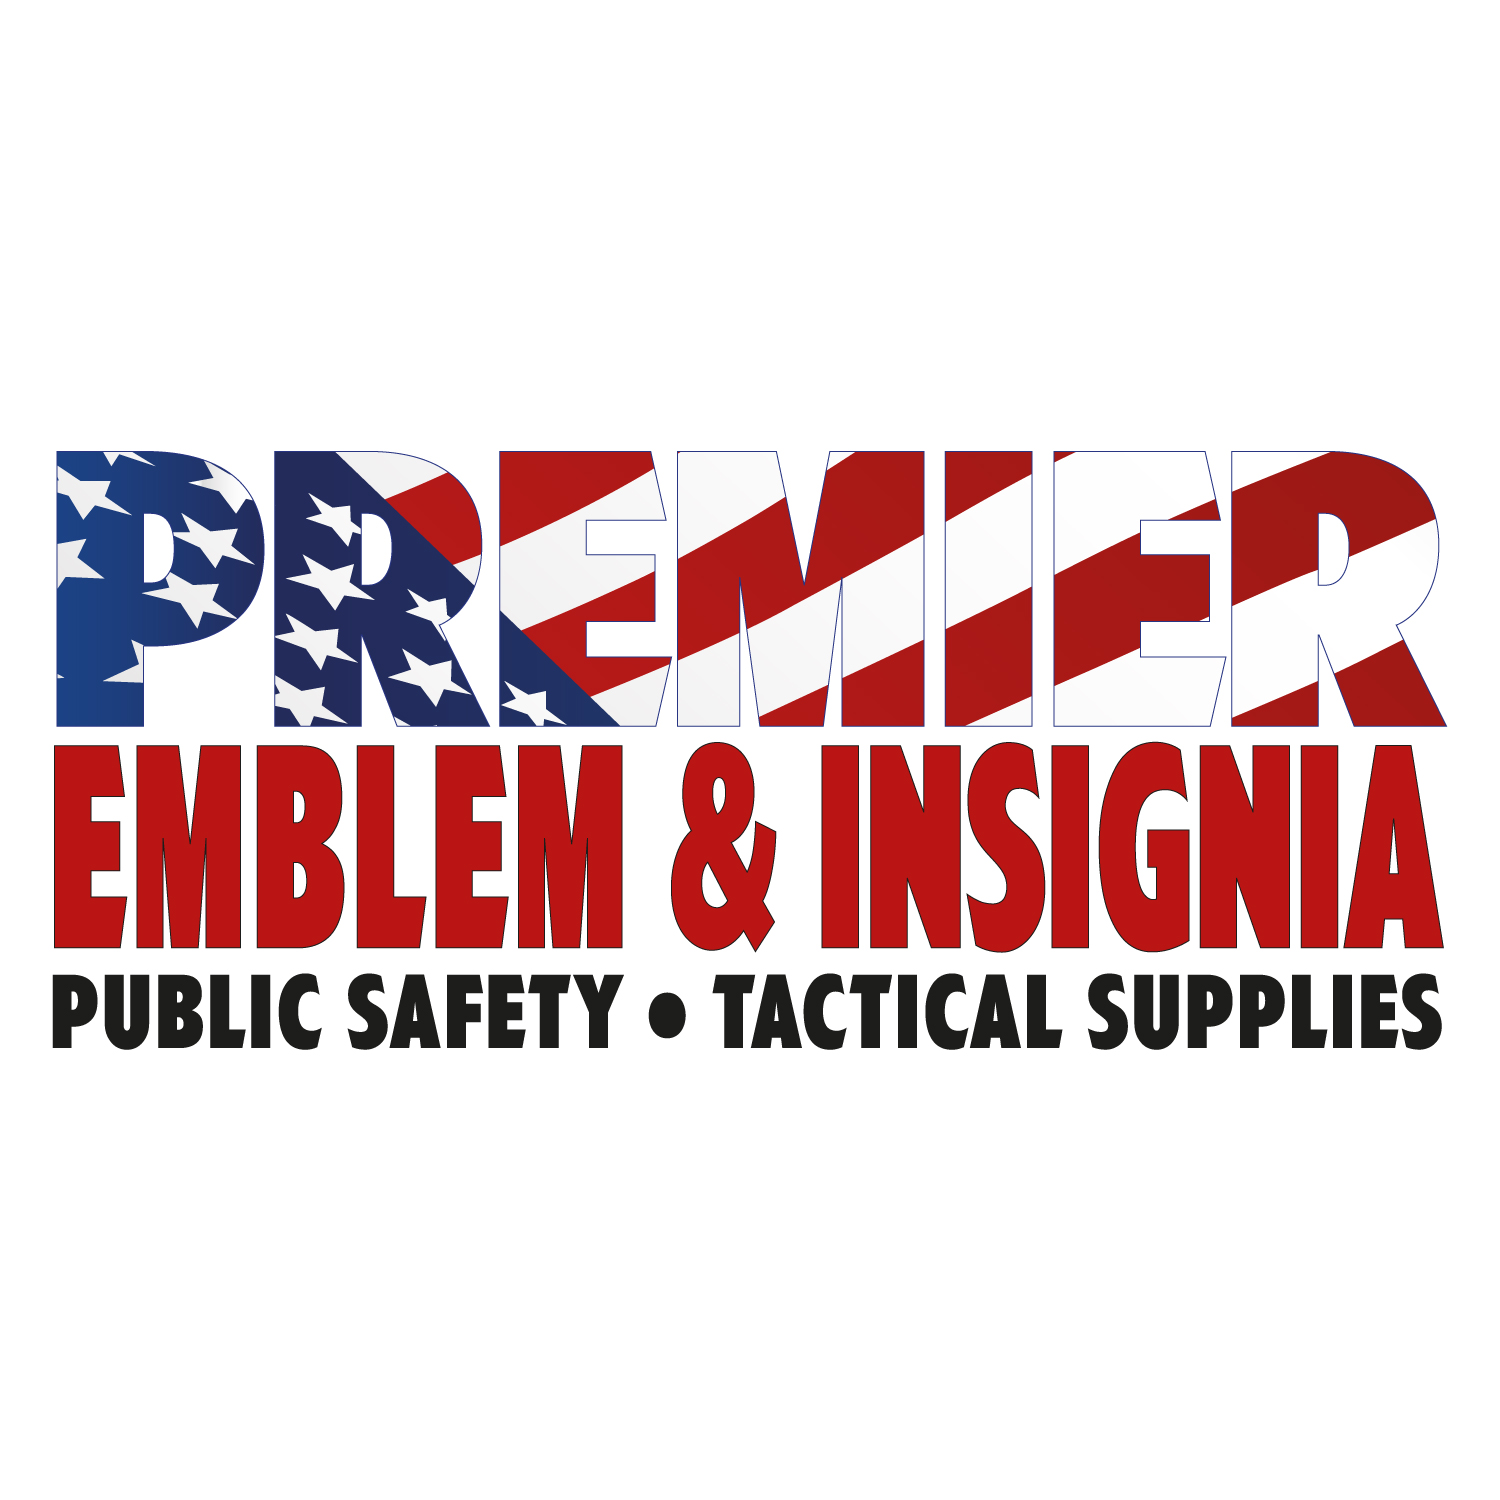 Crowd control vest - Premier Emblem manufactures emblems, insignia, and  accessories